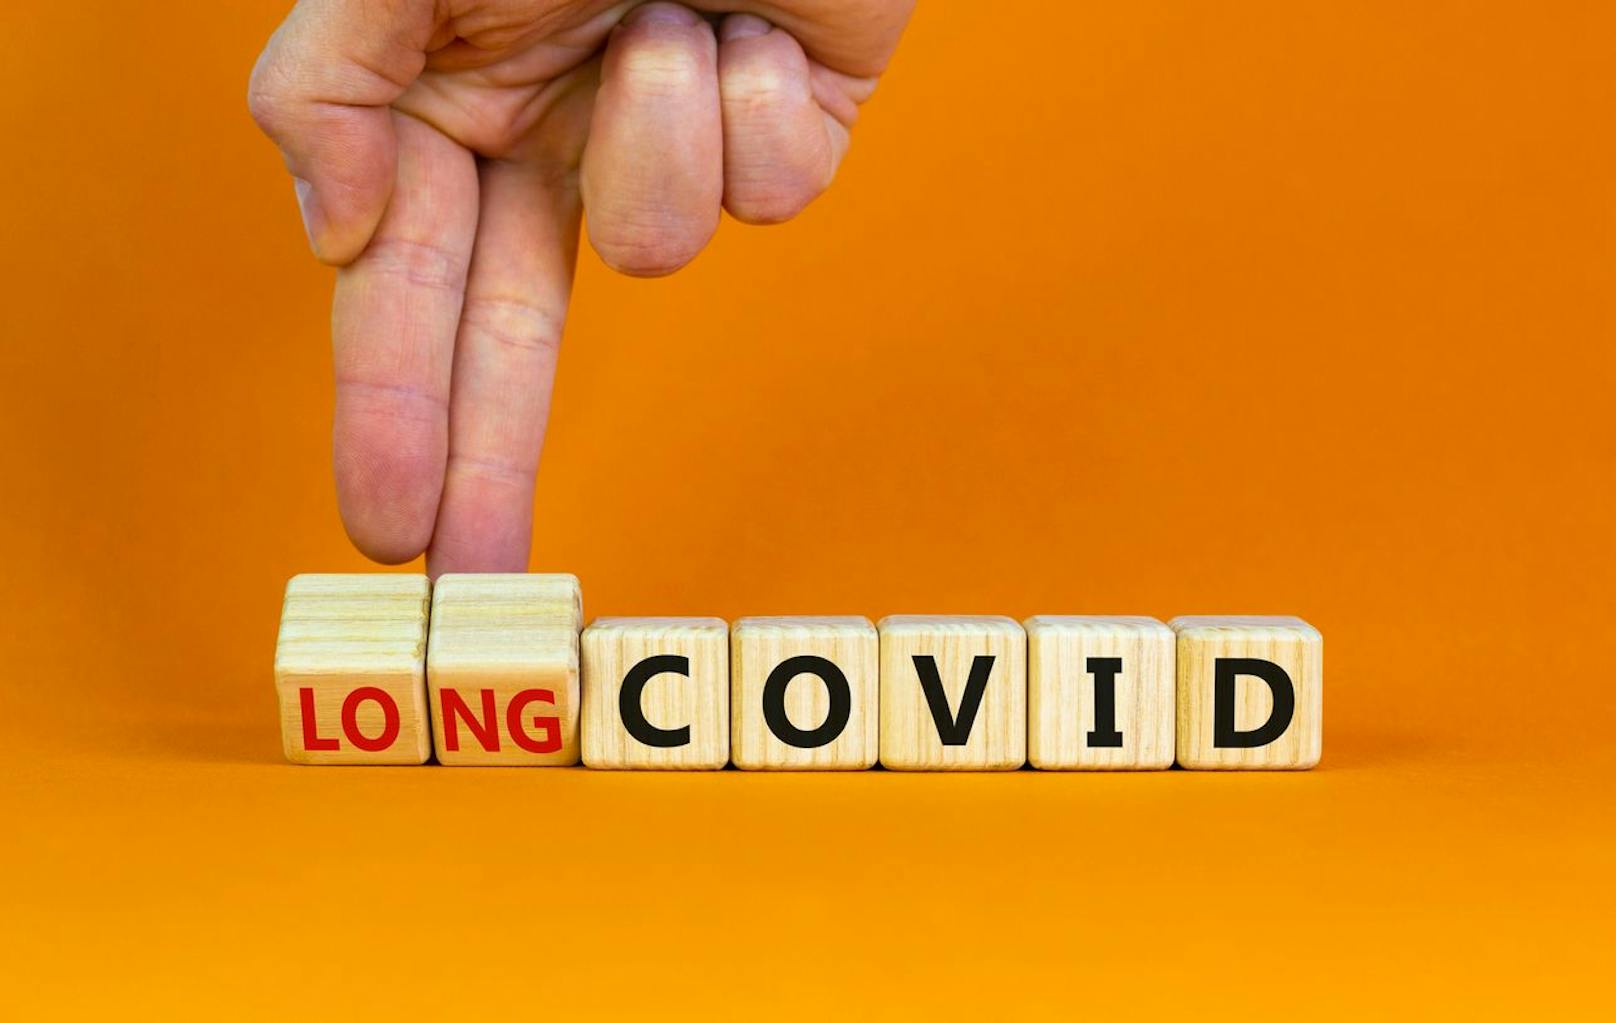 Long Covid-Syndrom ist ein Überbegriff für eine Vielzahl an Symptomen, die nach einer akuten Corona-Infektion zurückbleiben können.